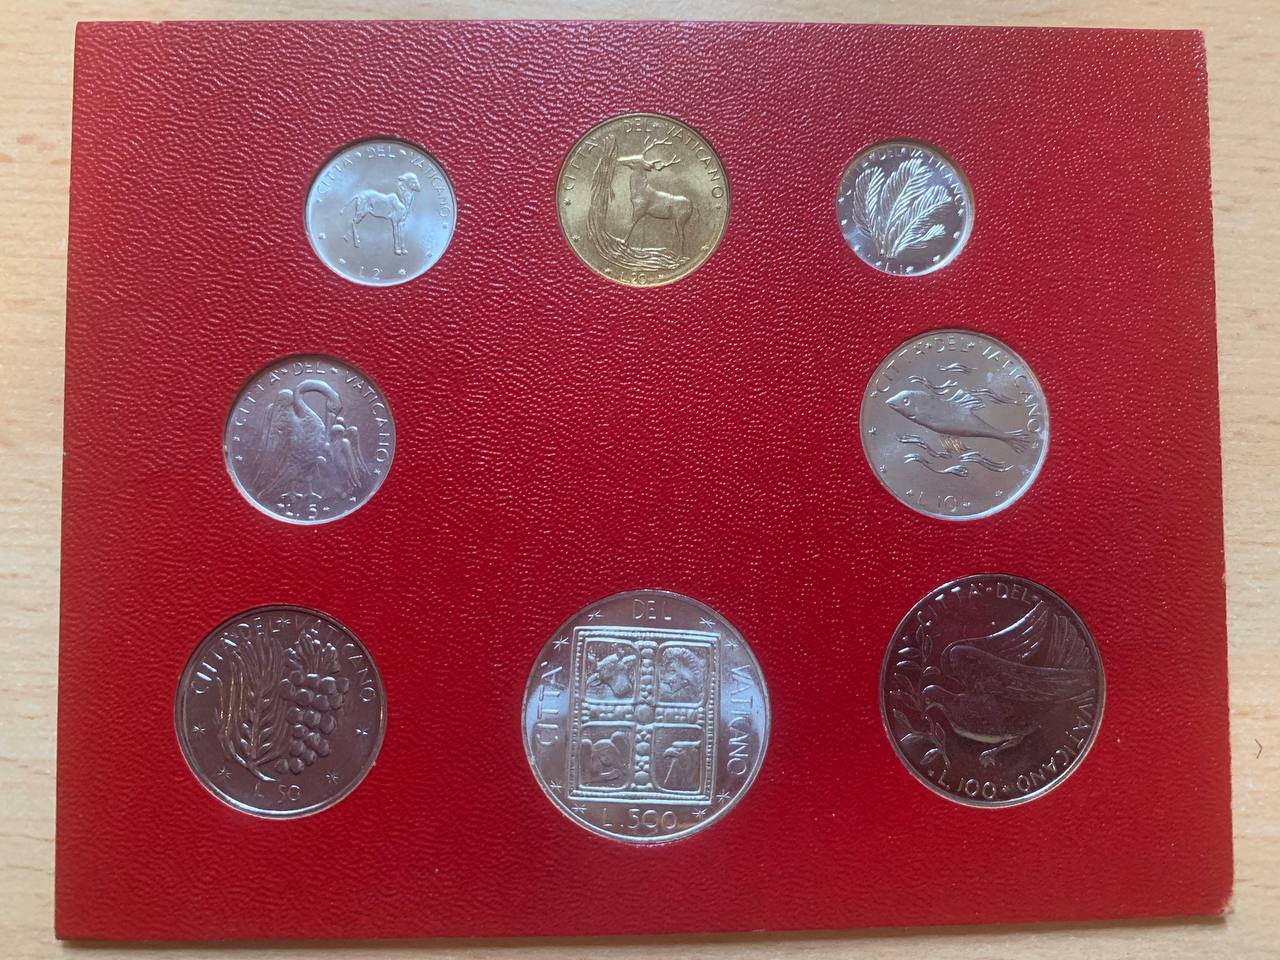  Jahresset von Vatikan 1977 BU (8 Münzen)   